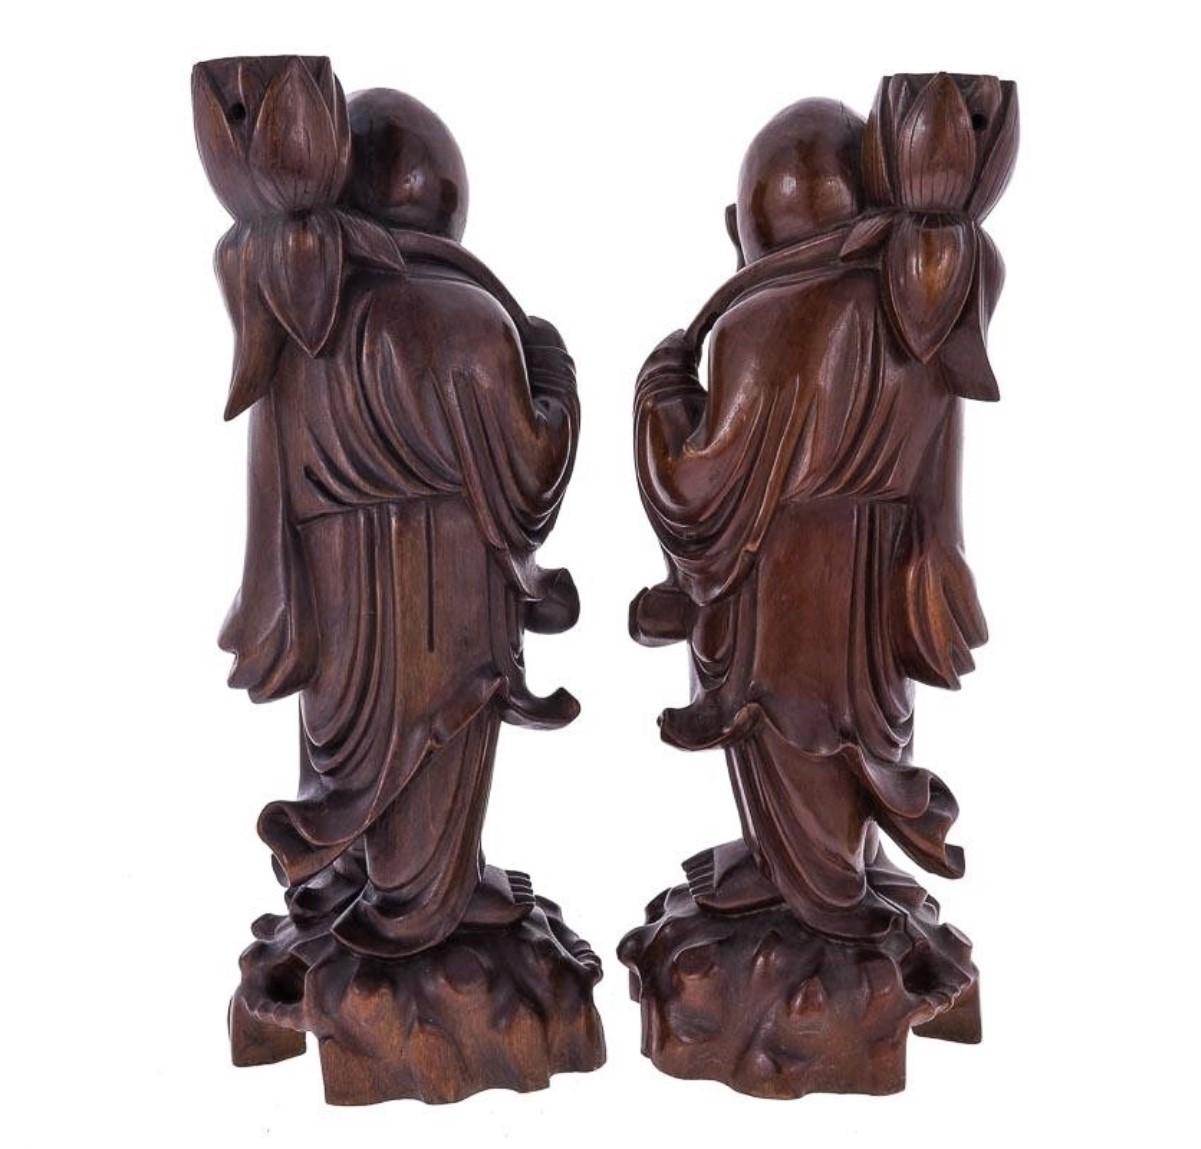 Ensemble de deux bougeoirs en bois de tamarin riant, sculptés à la main, datant du début du 20e siècle.
Mesures : Hauteur 15